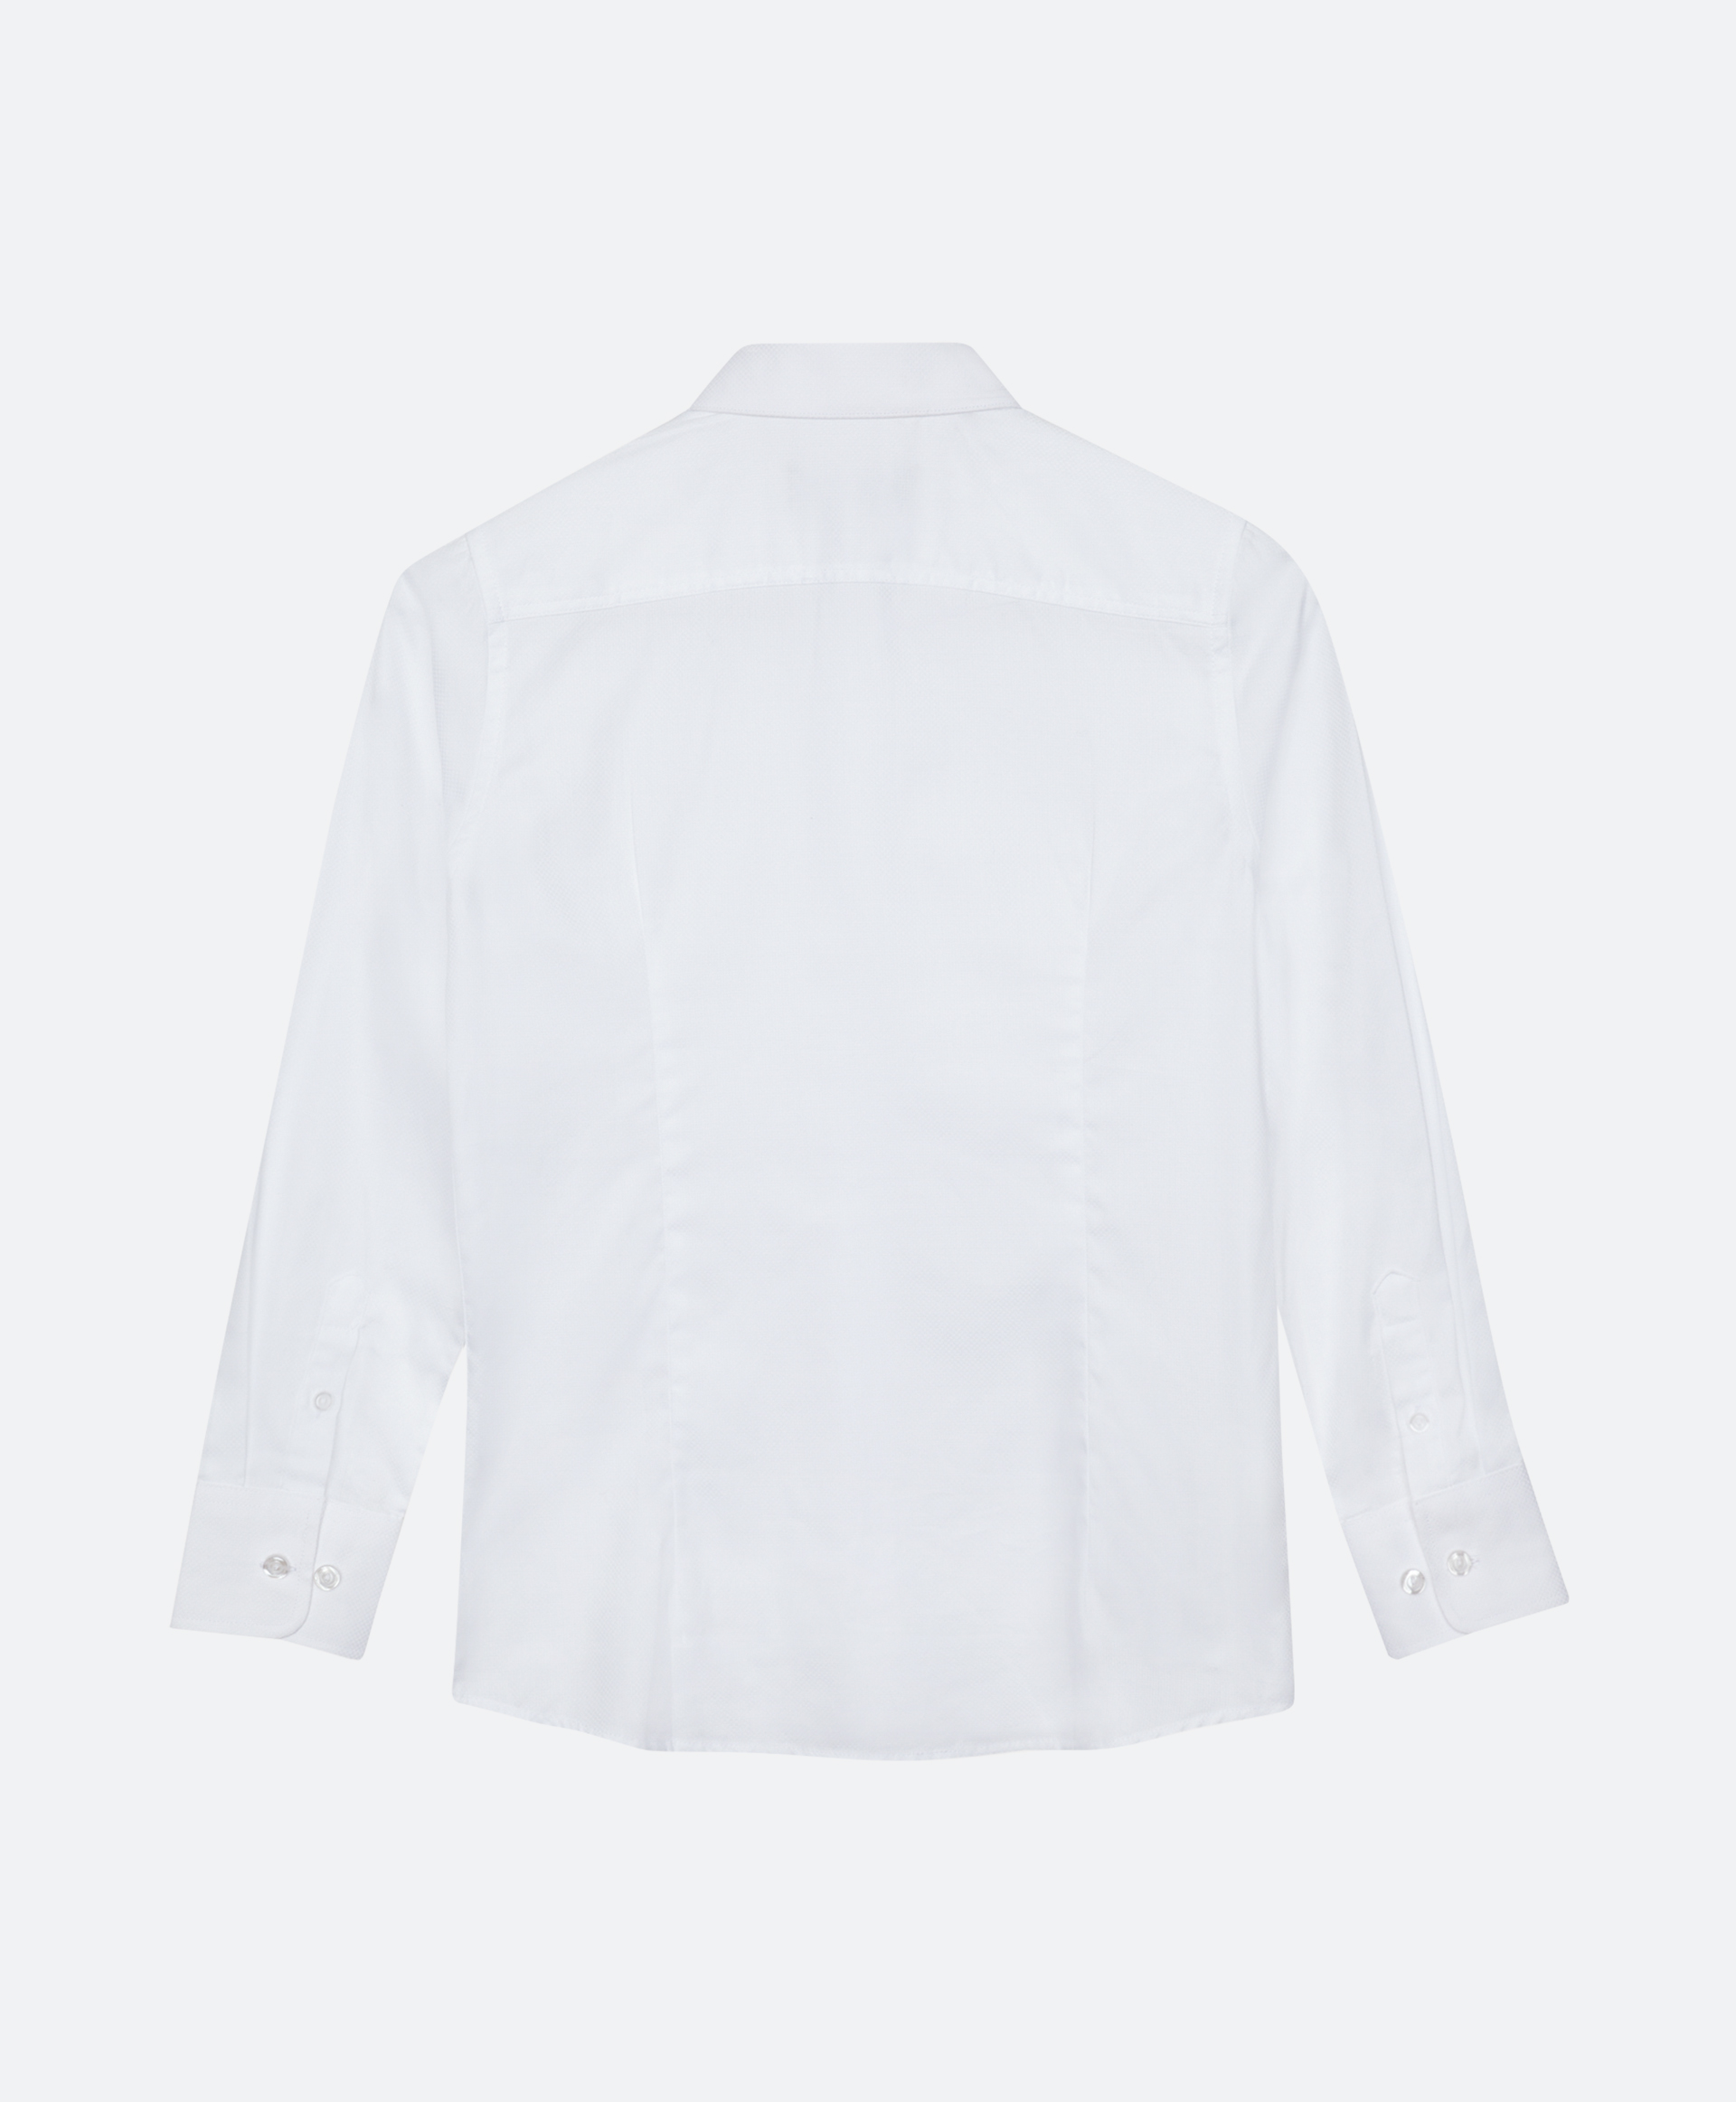 Сорочка белая с длинным рукавом Gulliver 200GSBC2302, размер 170, цвет белый - фото 5